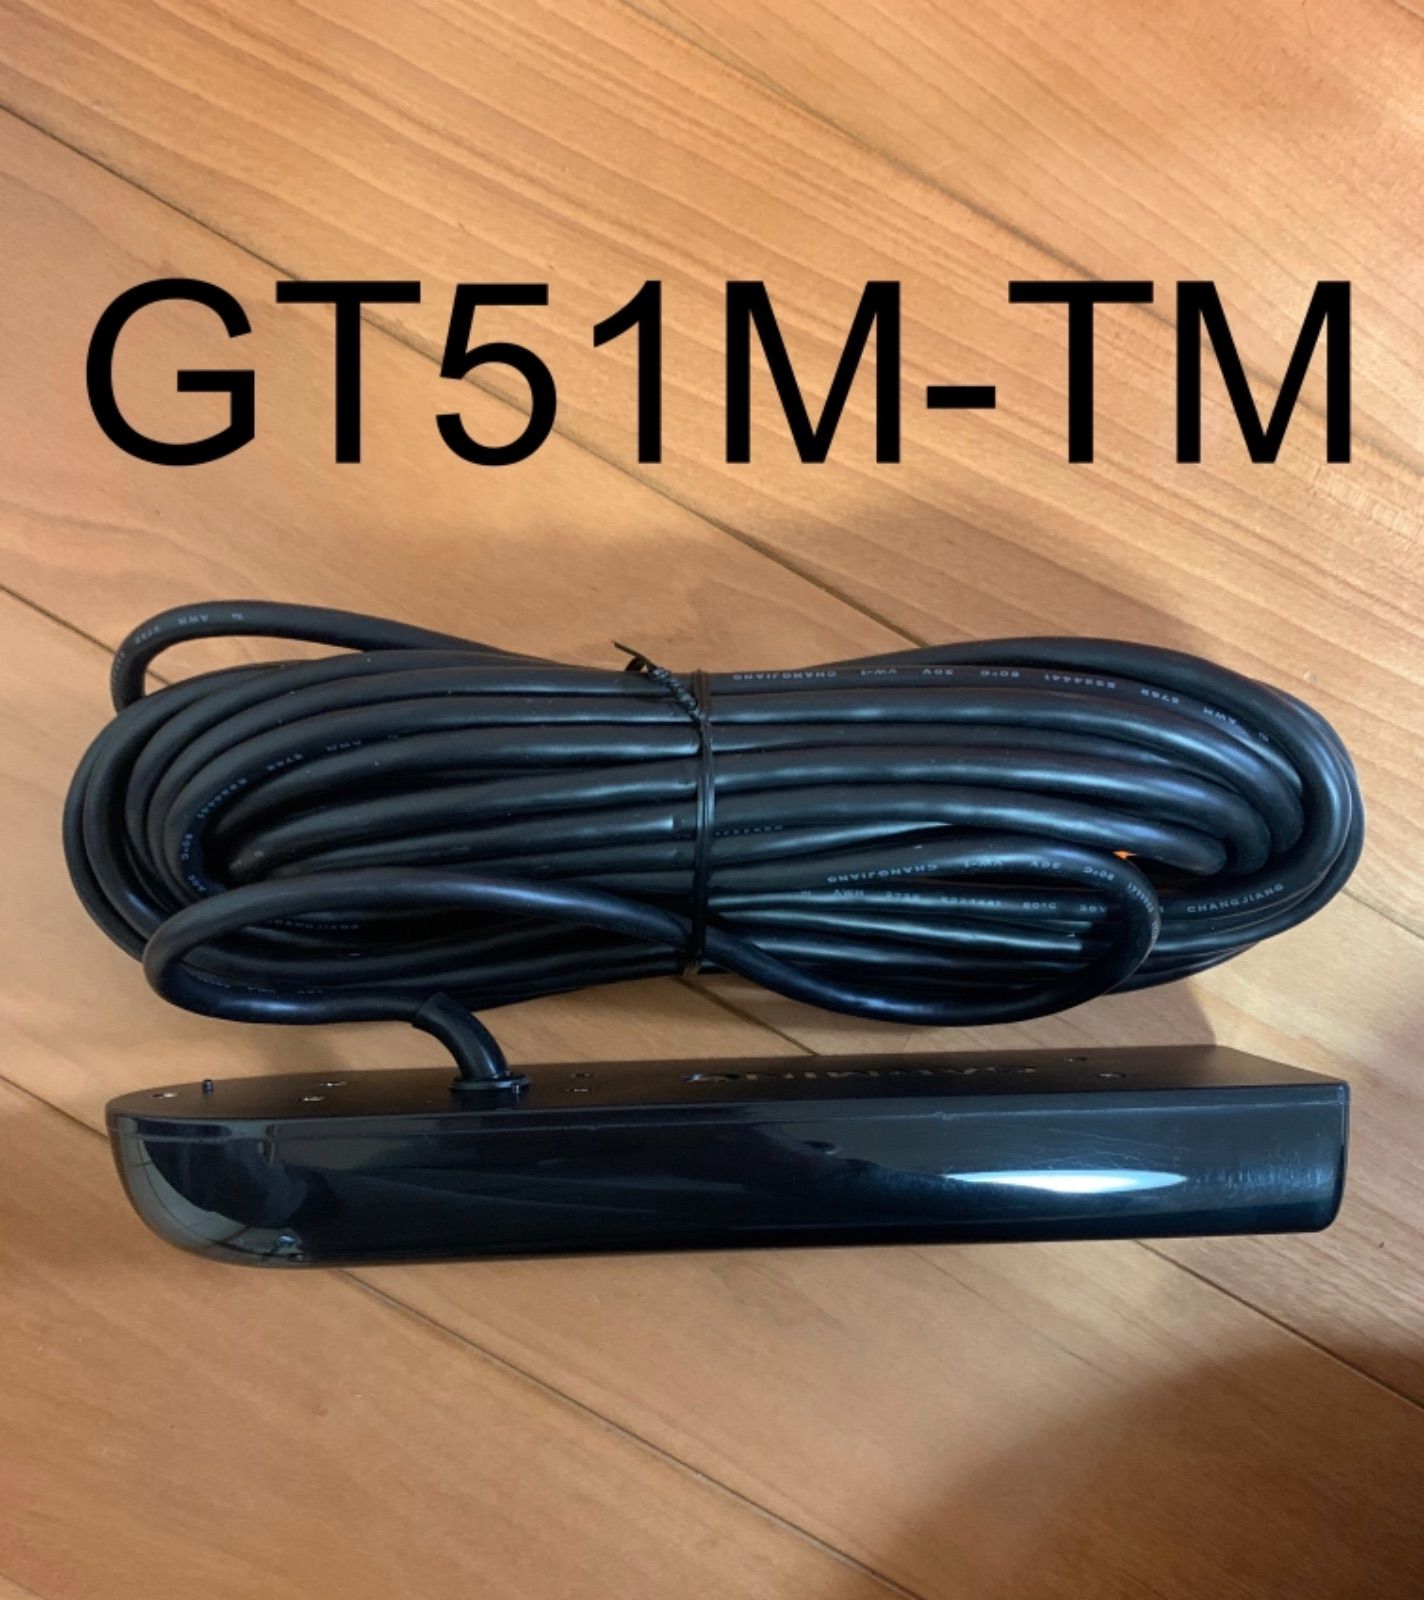 ガーミン エコマップUHD9インチ+GT51M-TM振動子セット